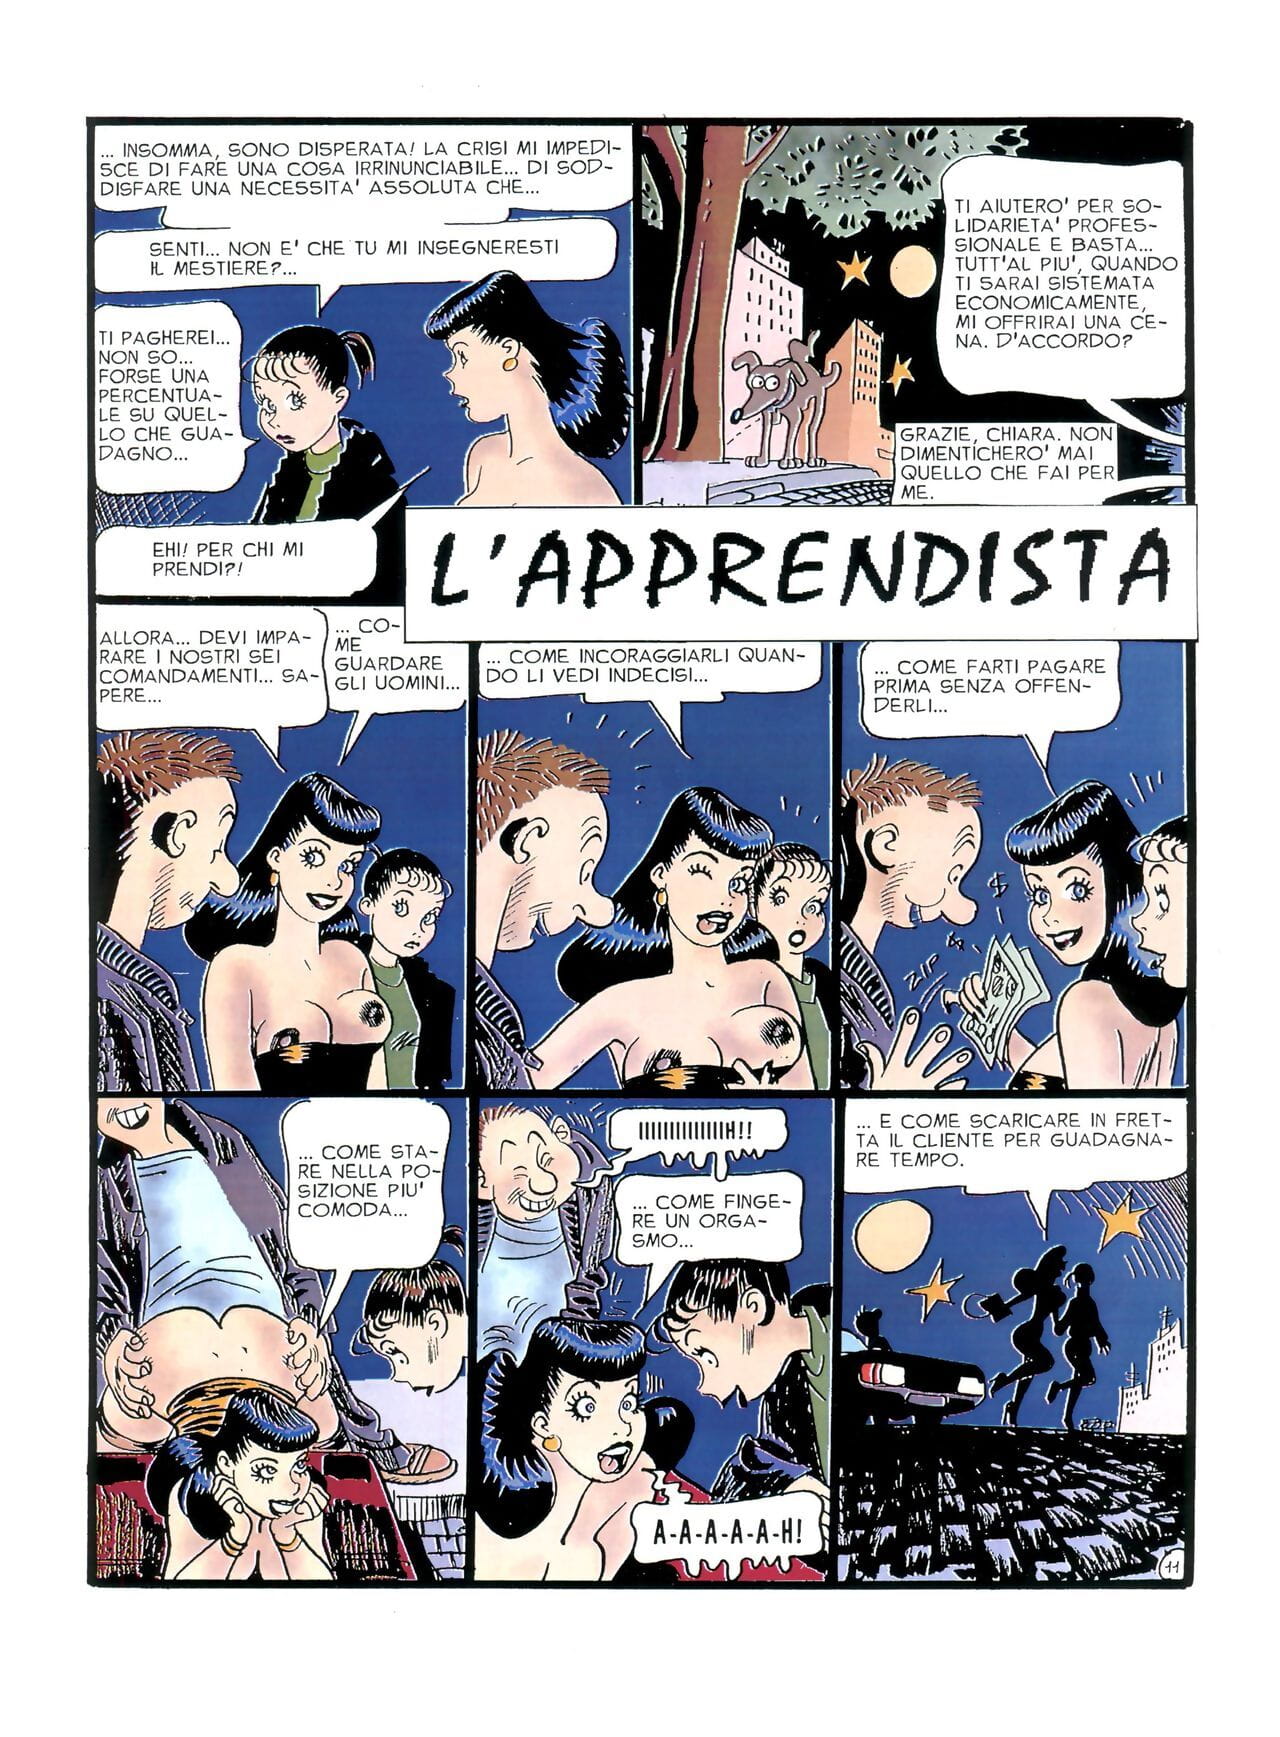 كيارا دي notte #1 page 1